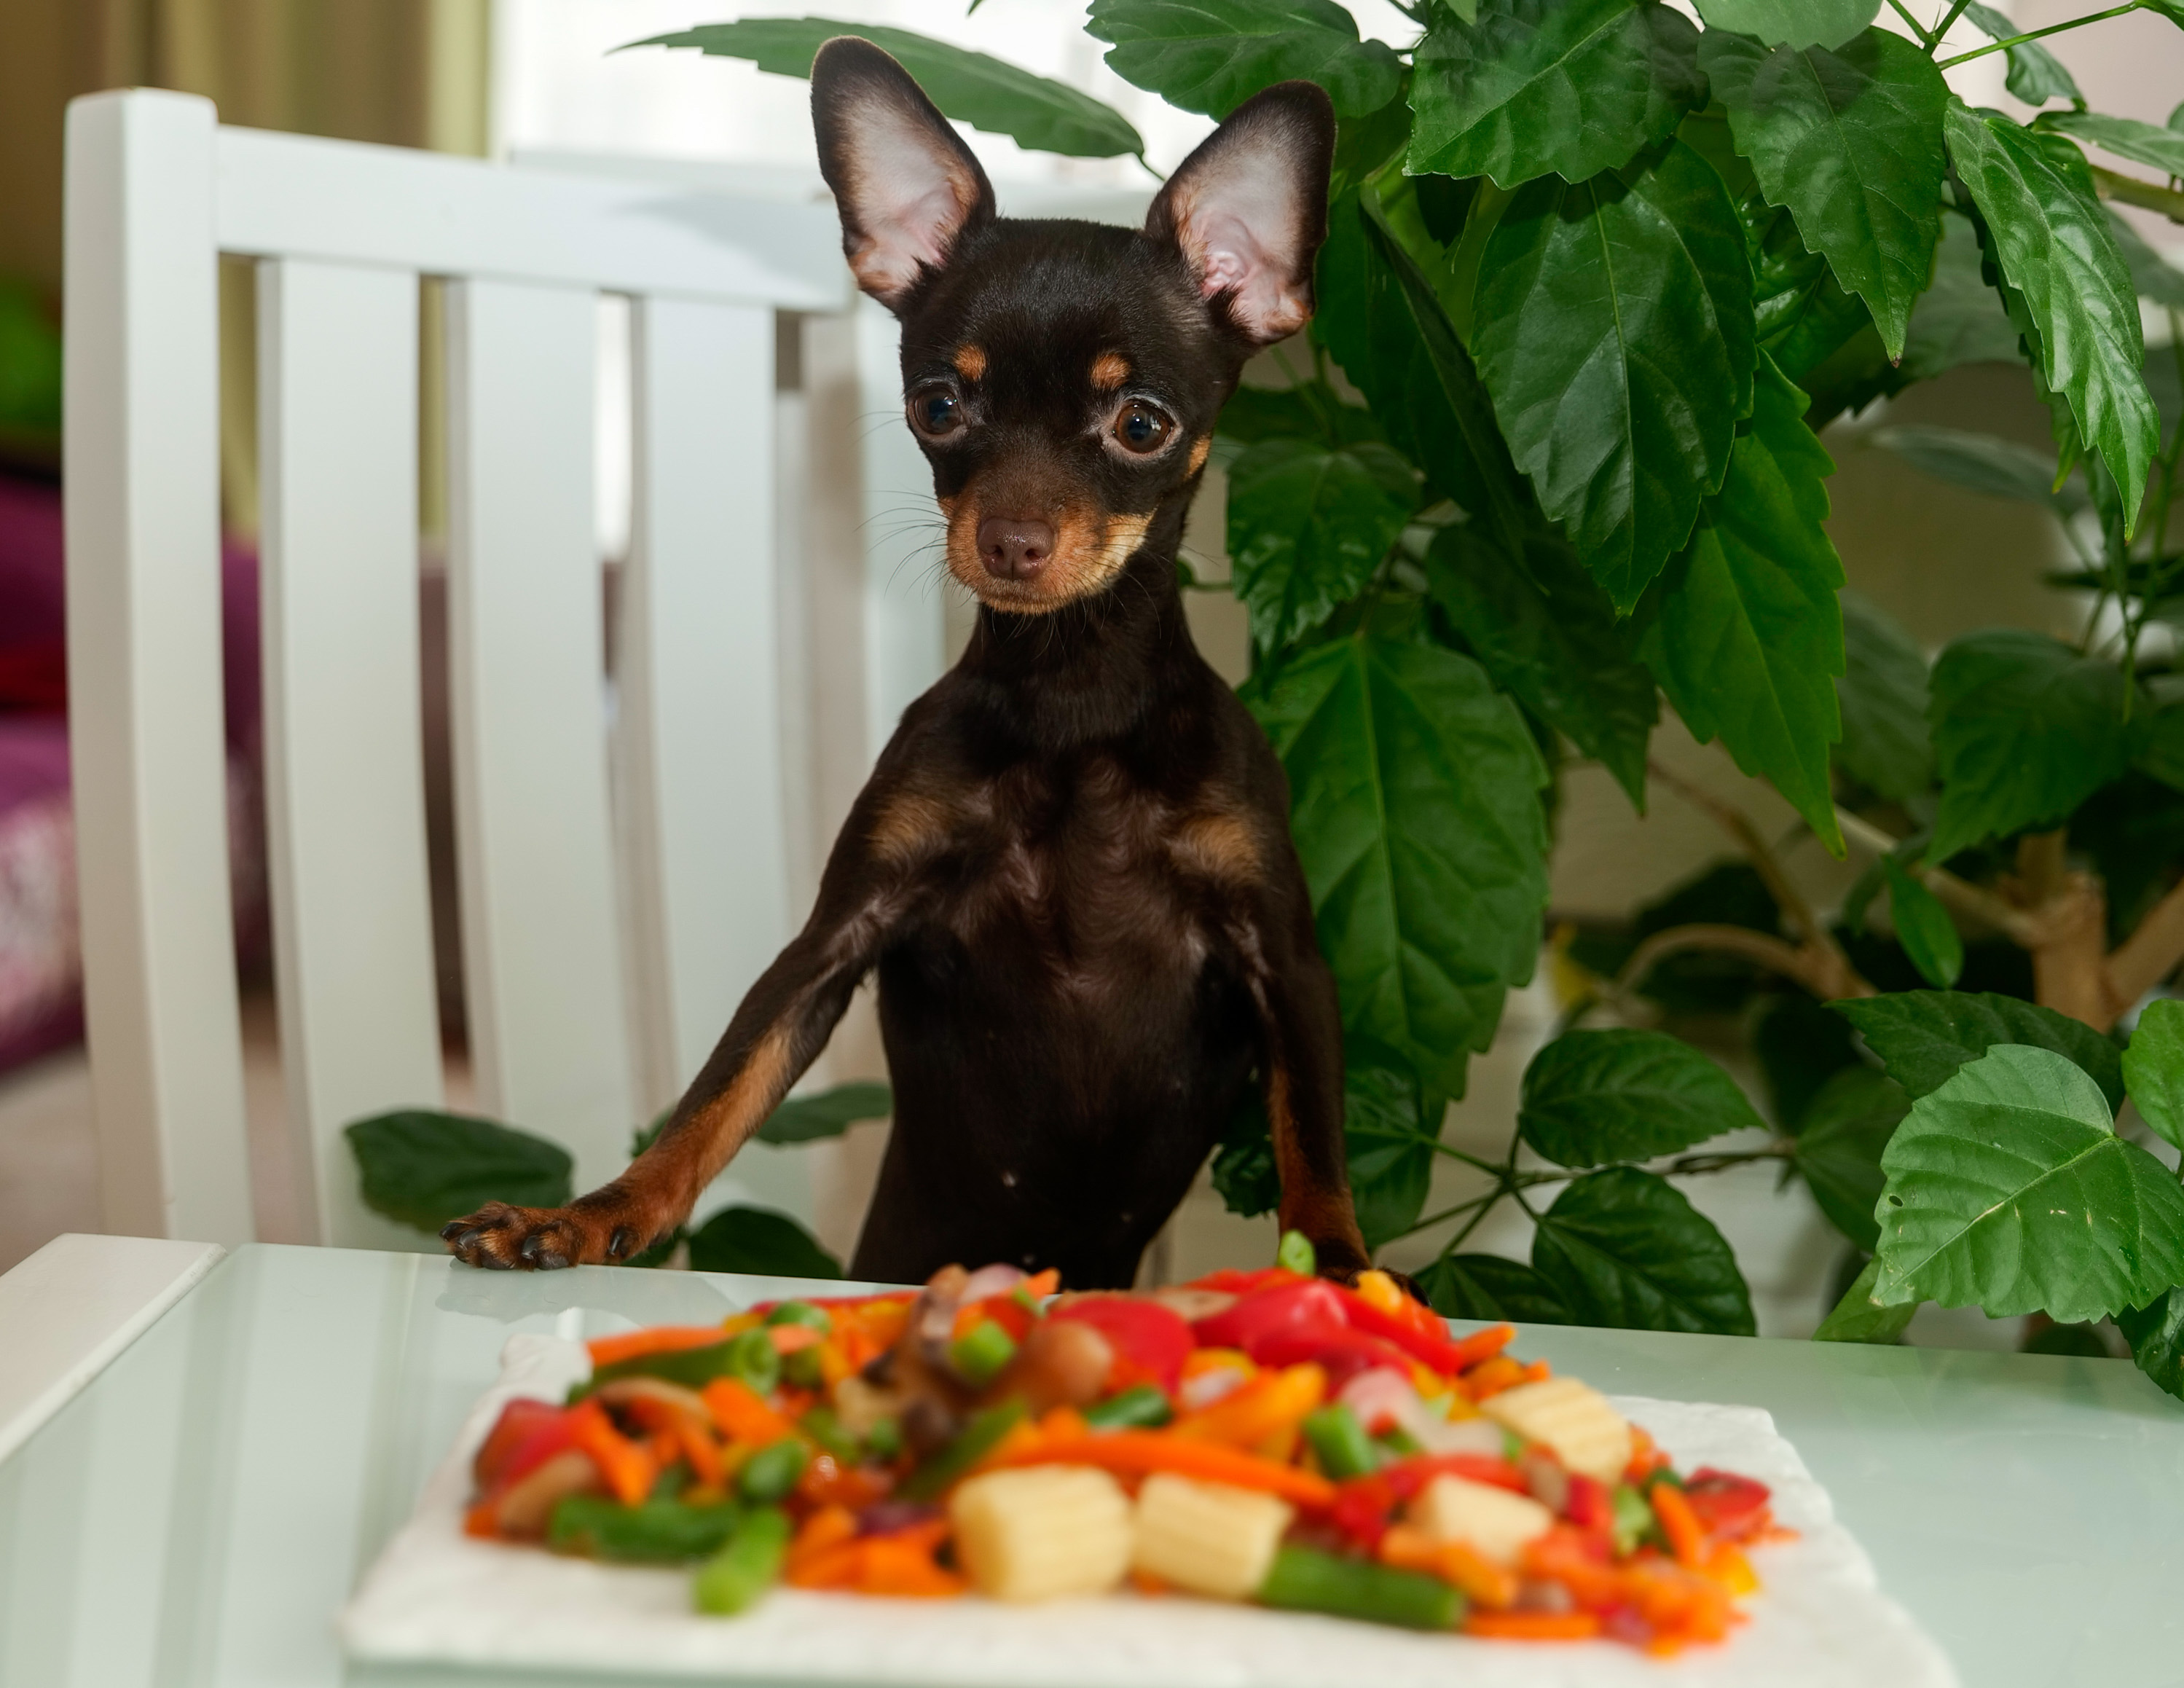 cute-dog-eating-vegetables-2022-10-31-23-24-04-utcjpg